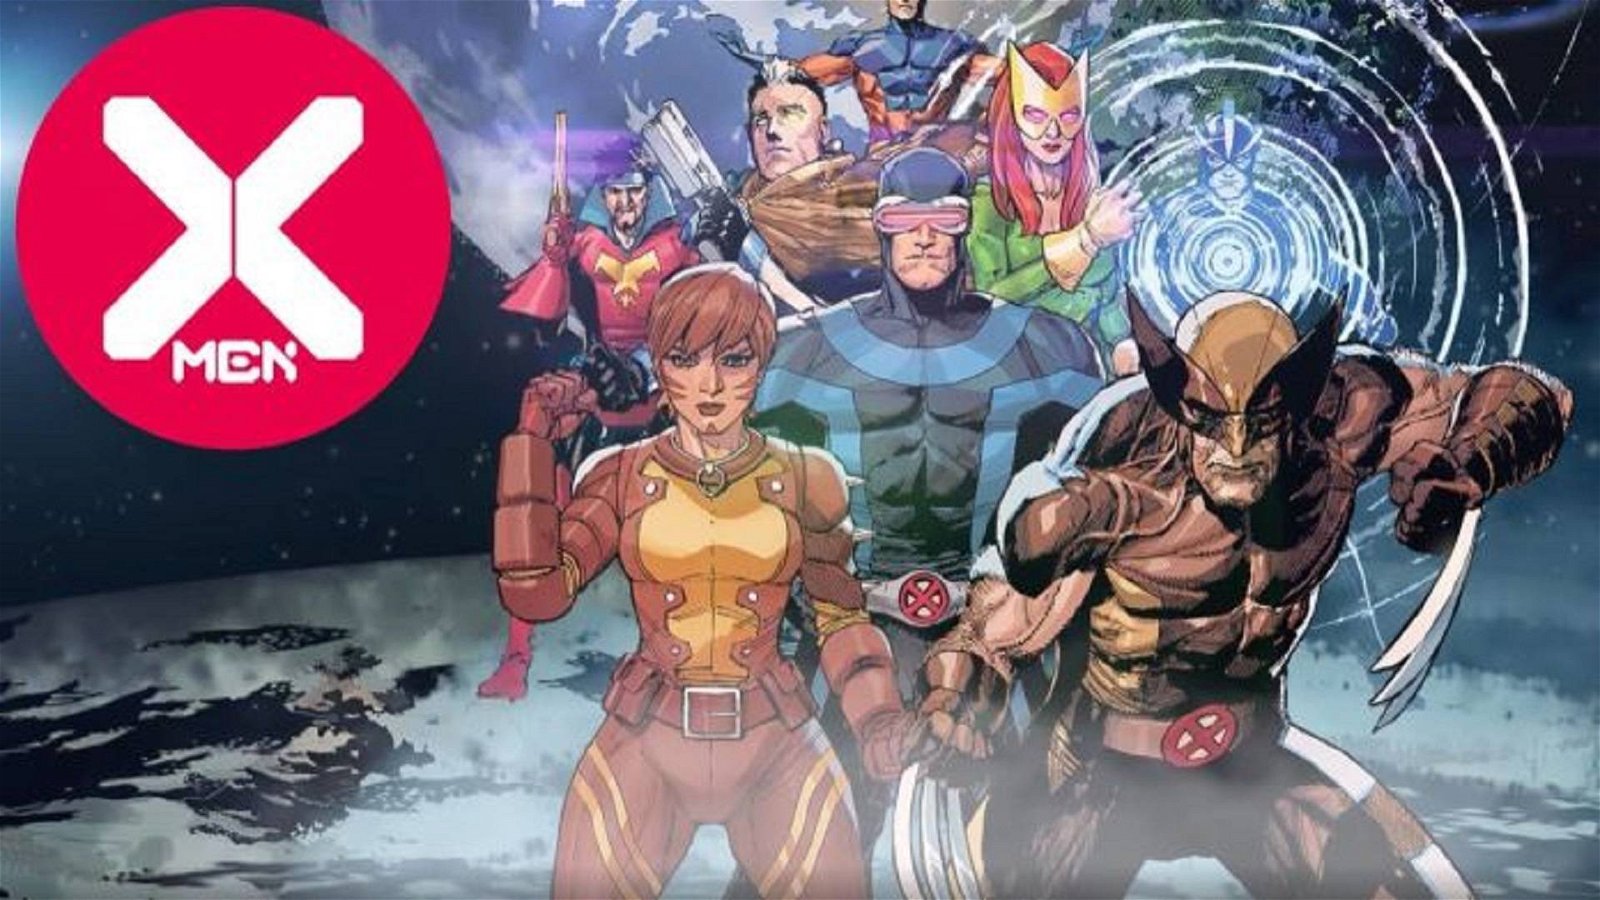 Immagine di X-Men - la Marvel rivede i piani di Jonathan Hickman?